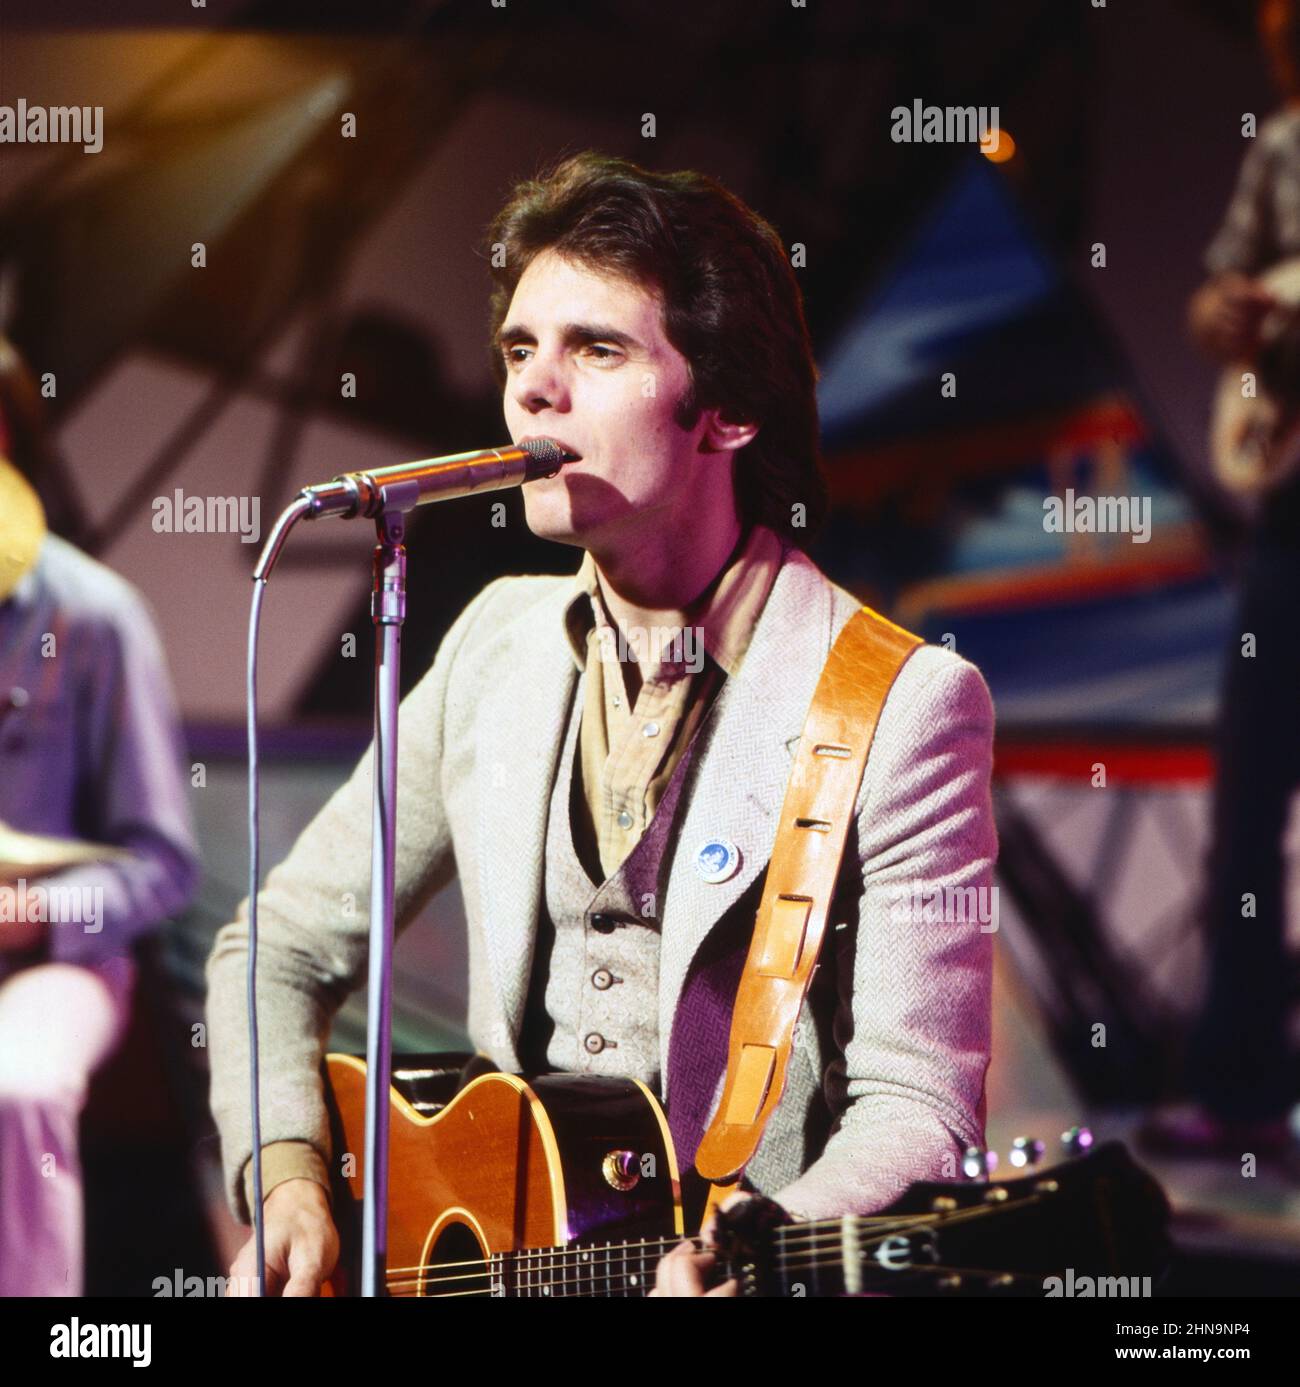 Iain Matthews, britischer Folk-Sänger und Gitarrist, 1970. Iain Matthews, British Folk singer and guitarist, 1970. Stock Photo